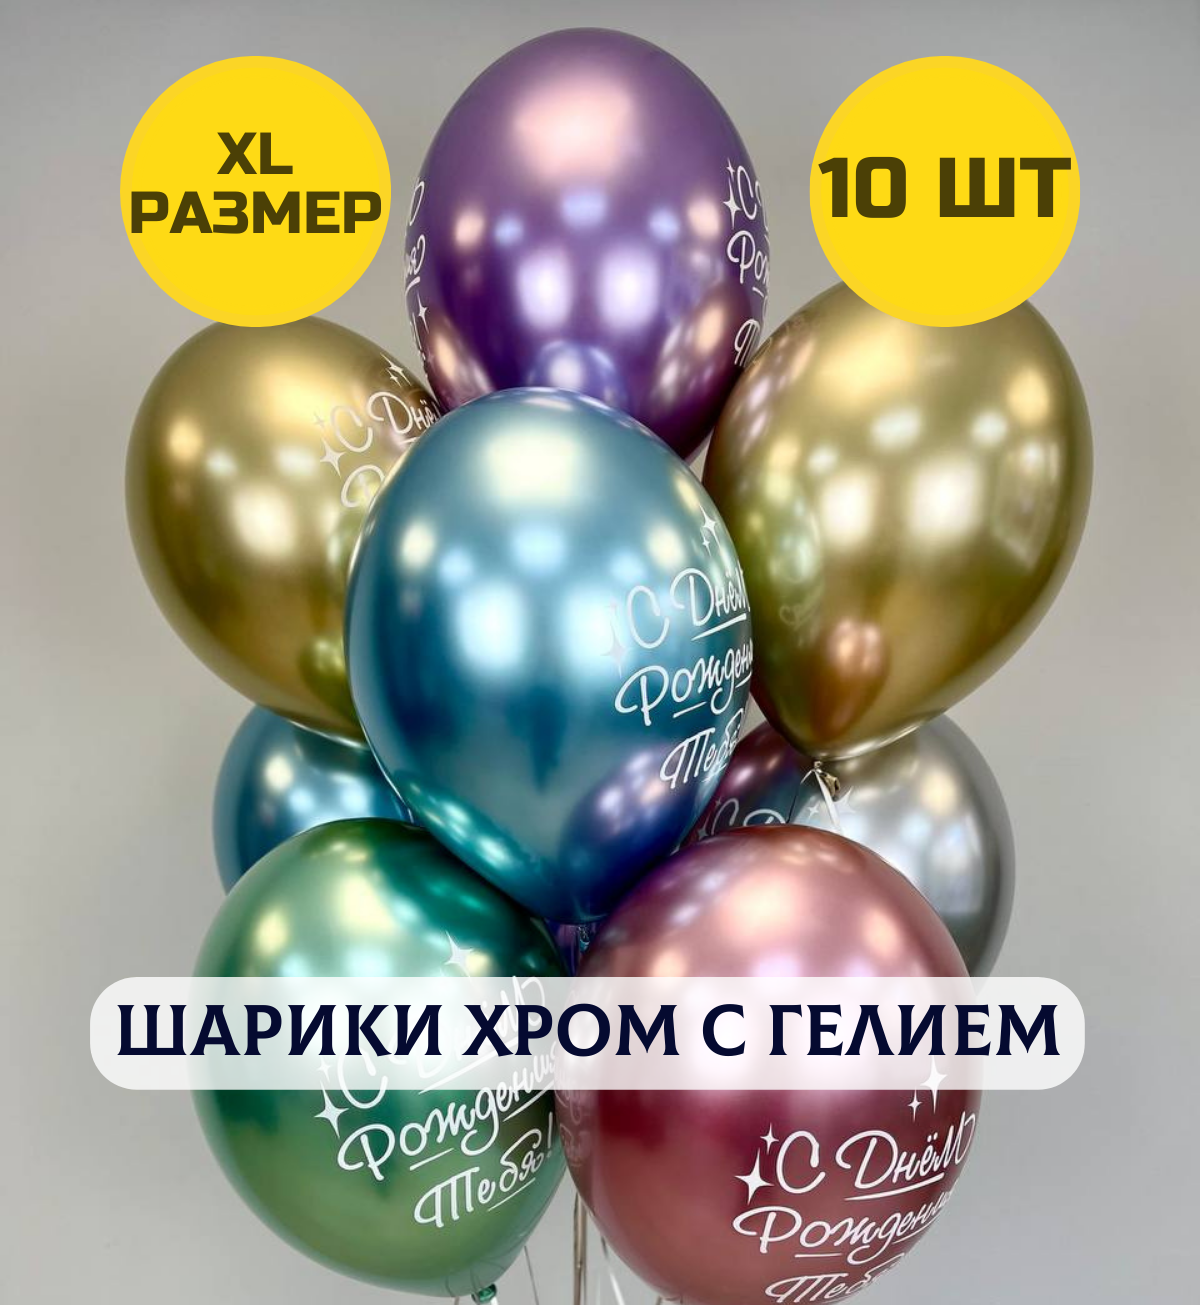 Воздушные шары С днем рождения тебя с гелием хром XL размер, 10 шт.